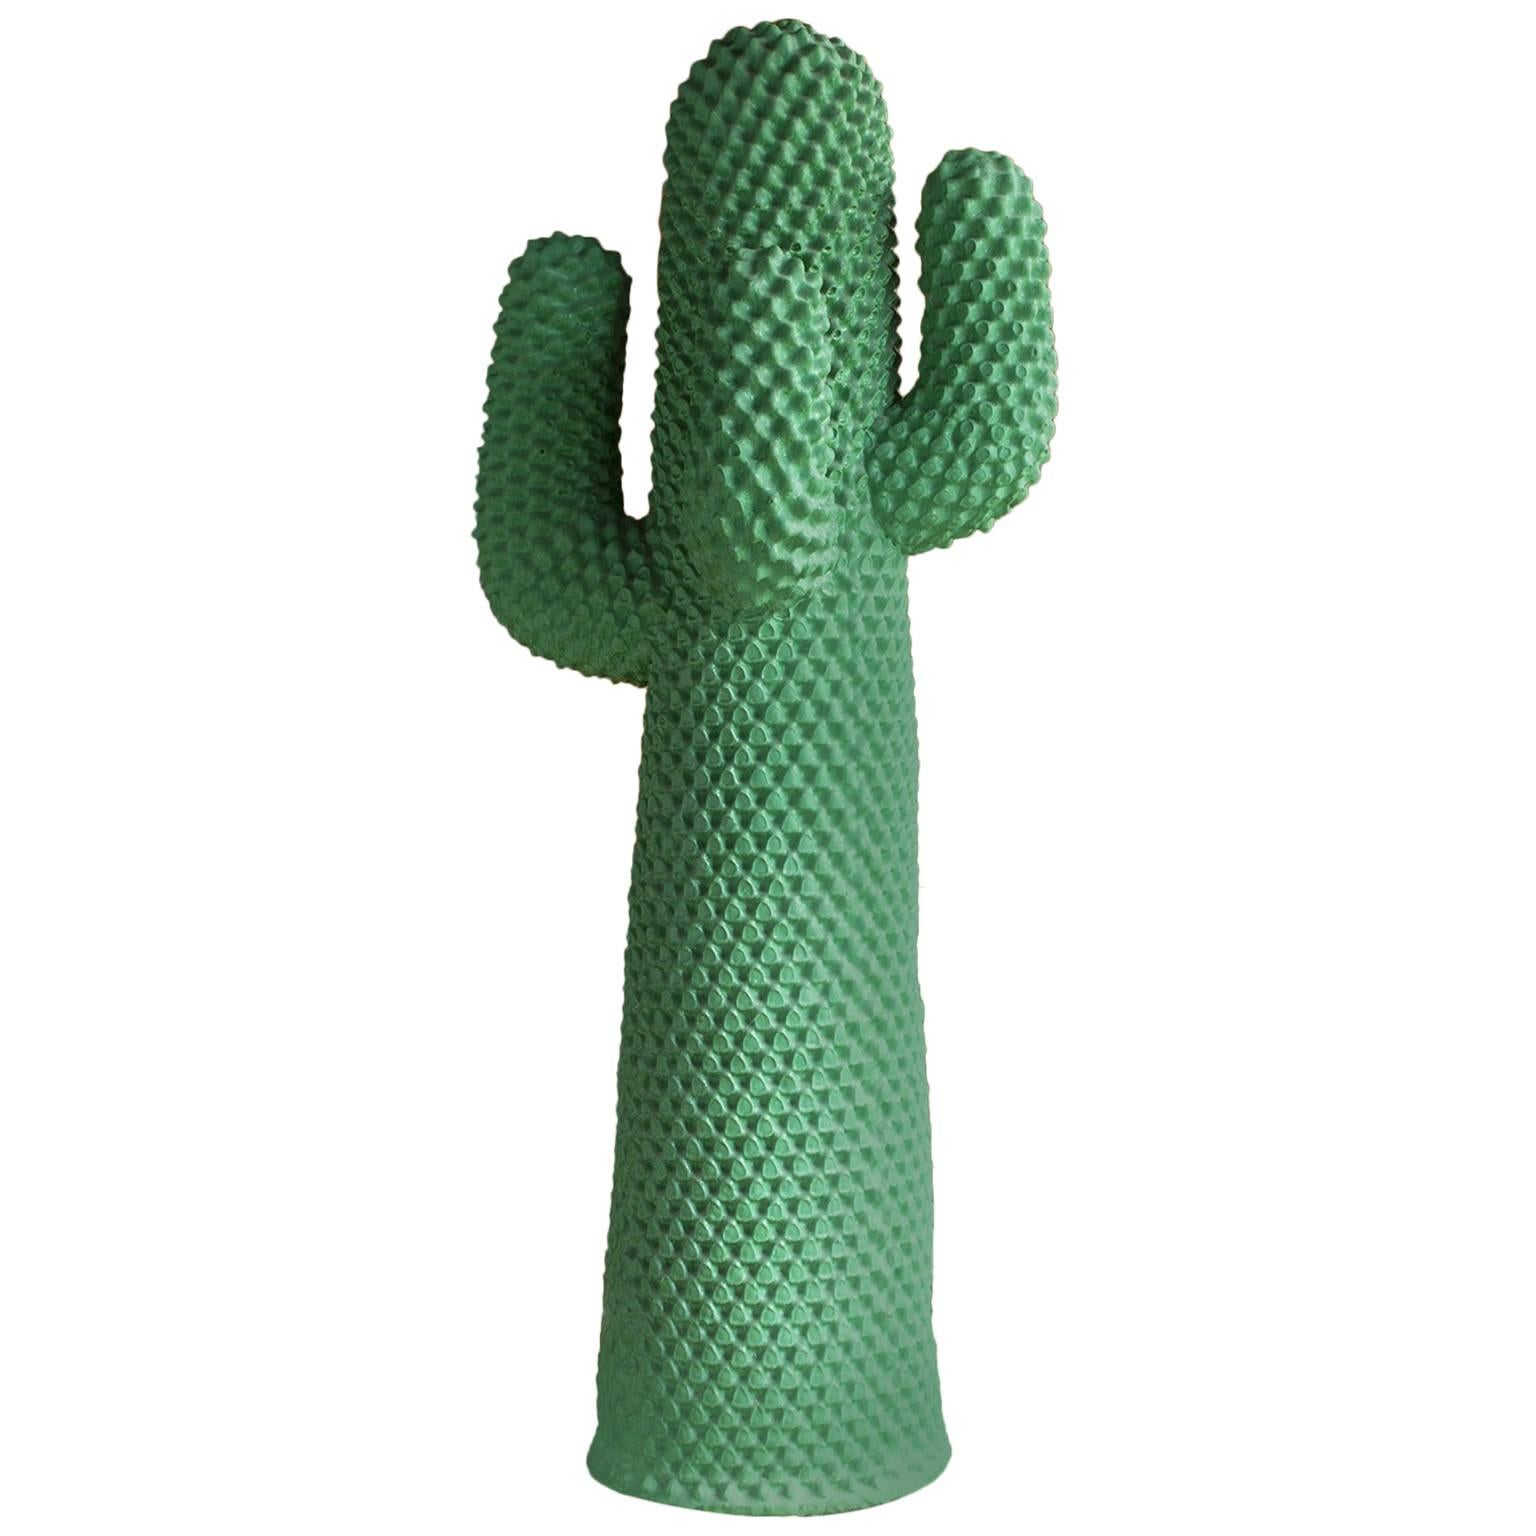 1972, Guido Drocco und Franco Mello, Cactus-Mantelständer, das beste Grün, das je gesehen wurde